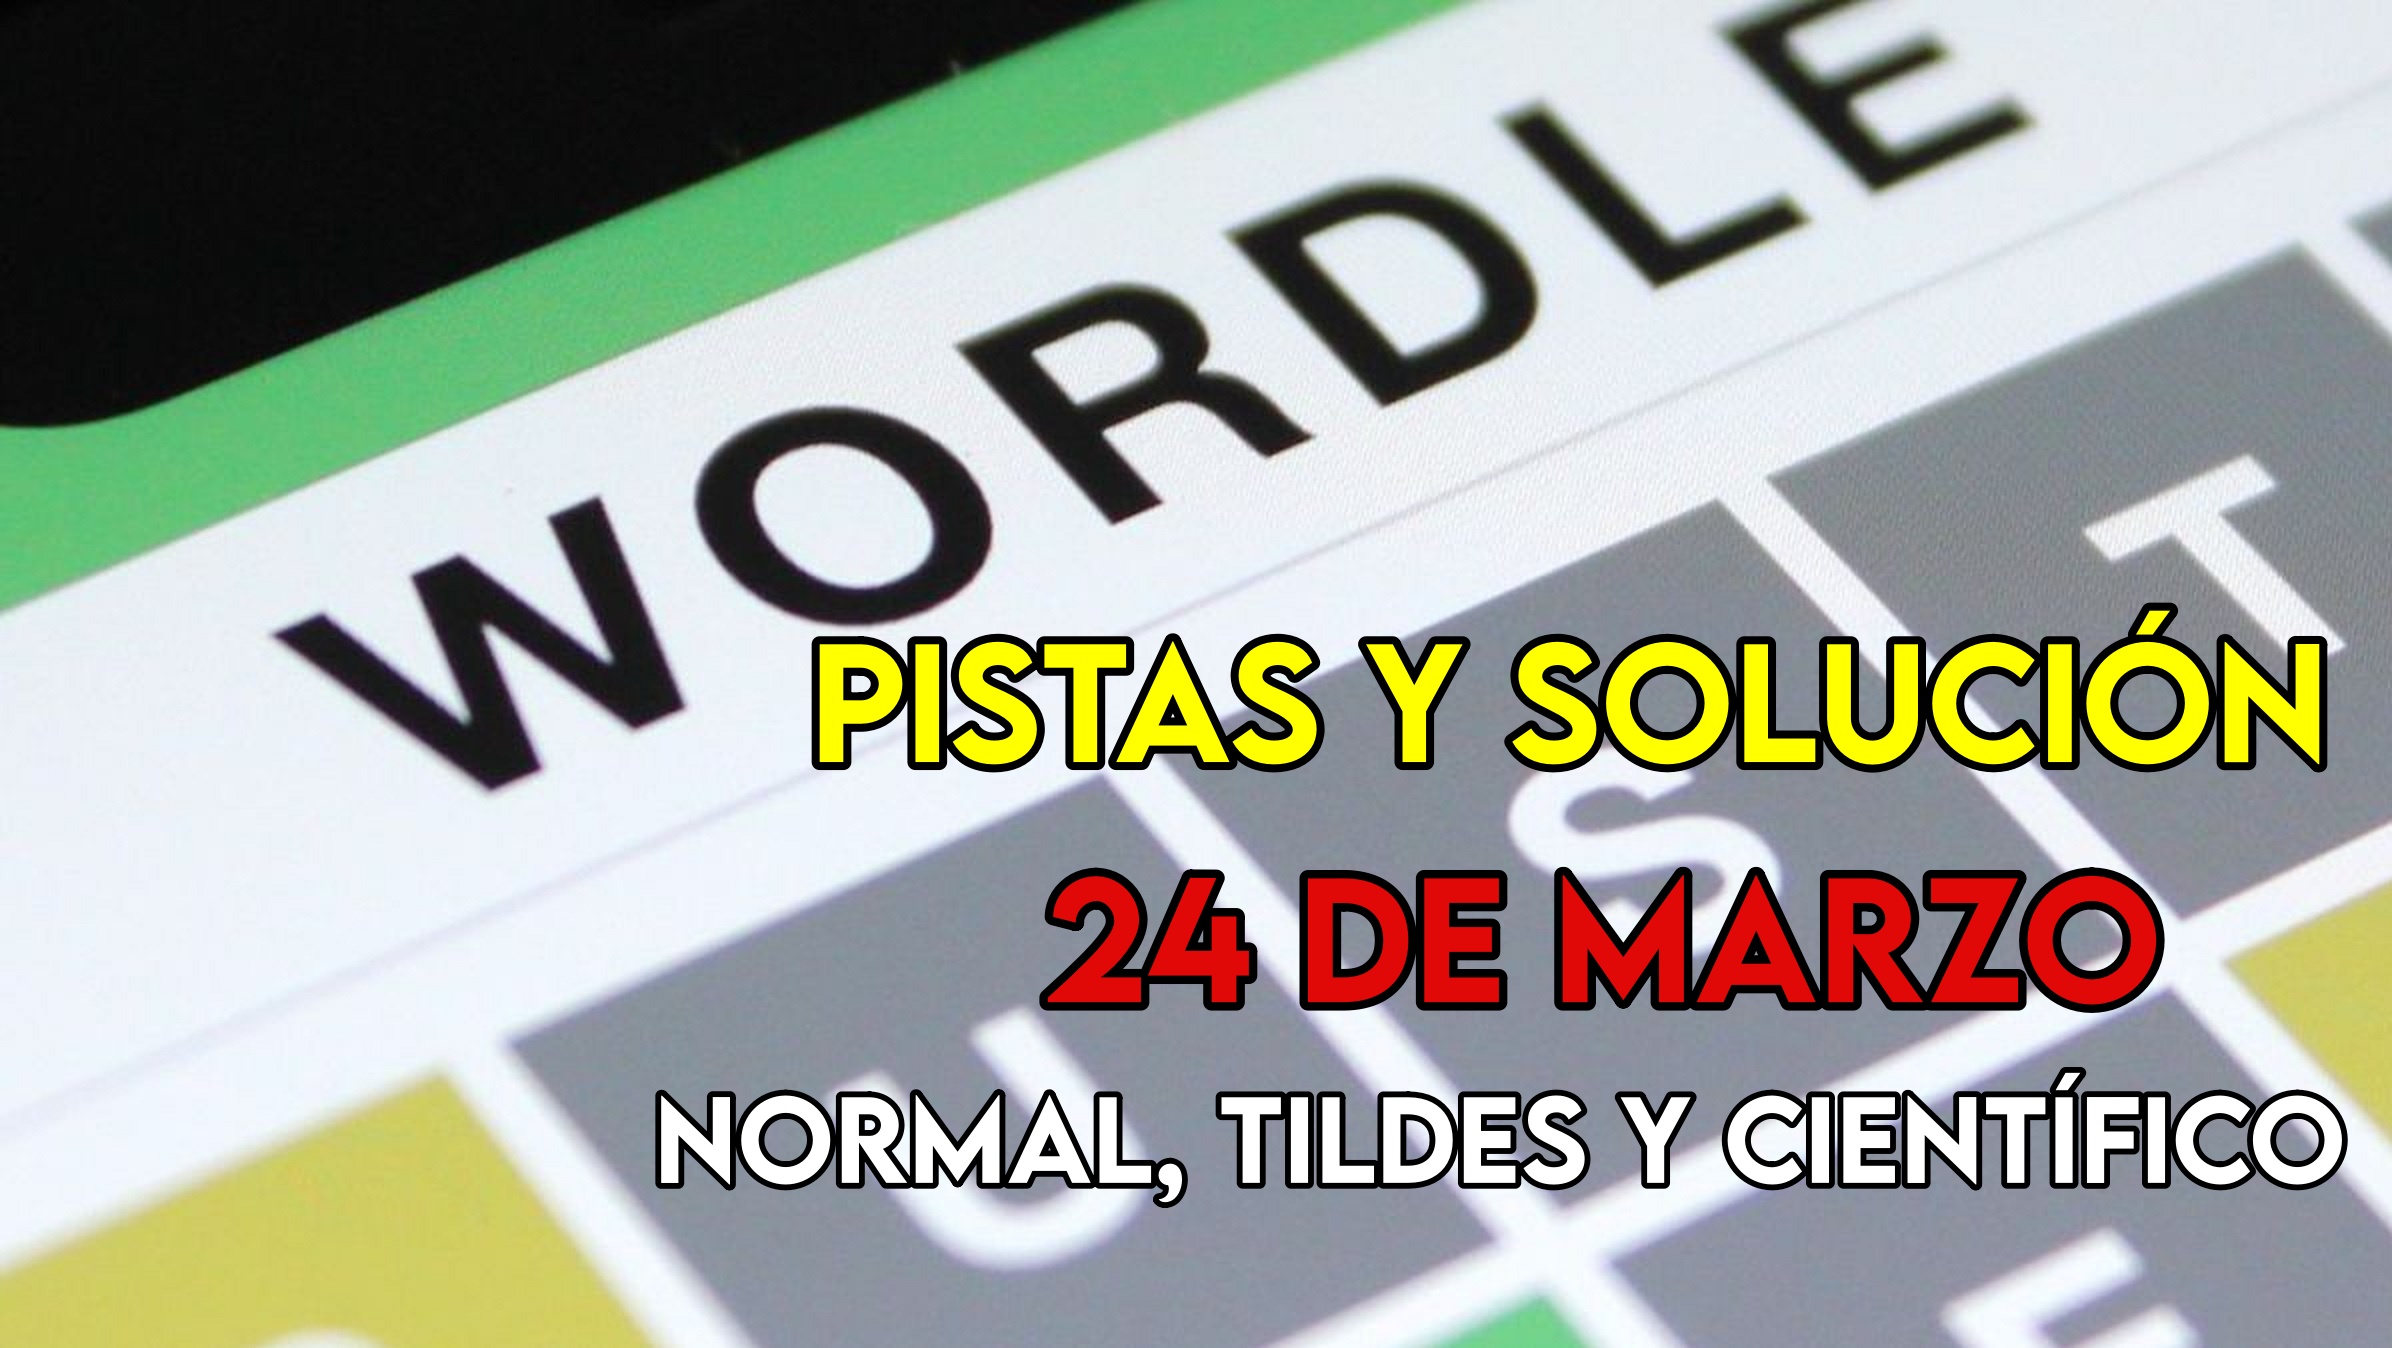 Wordle en español, científico y tildes para el reto de hoy 24 de marzo: pistas y solución